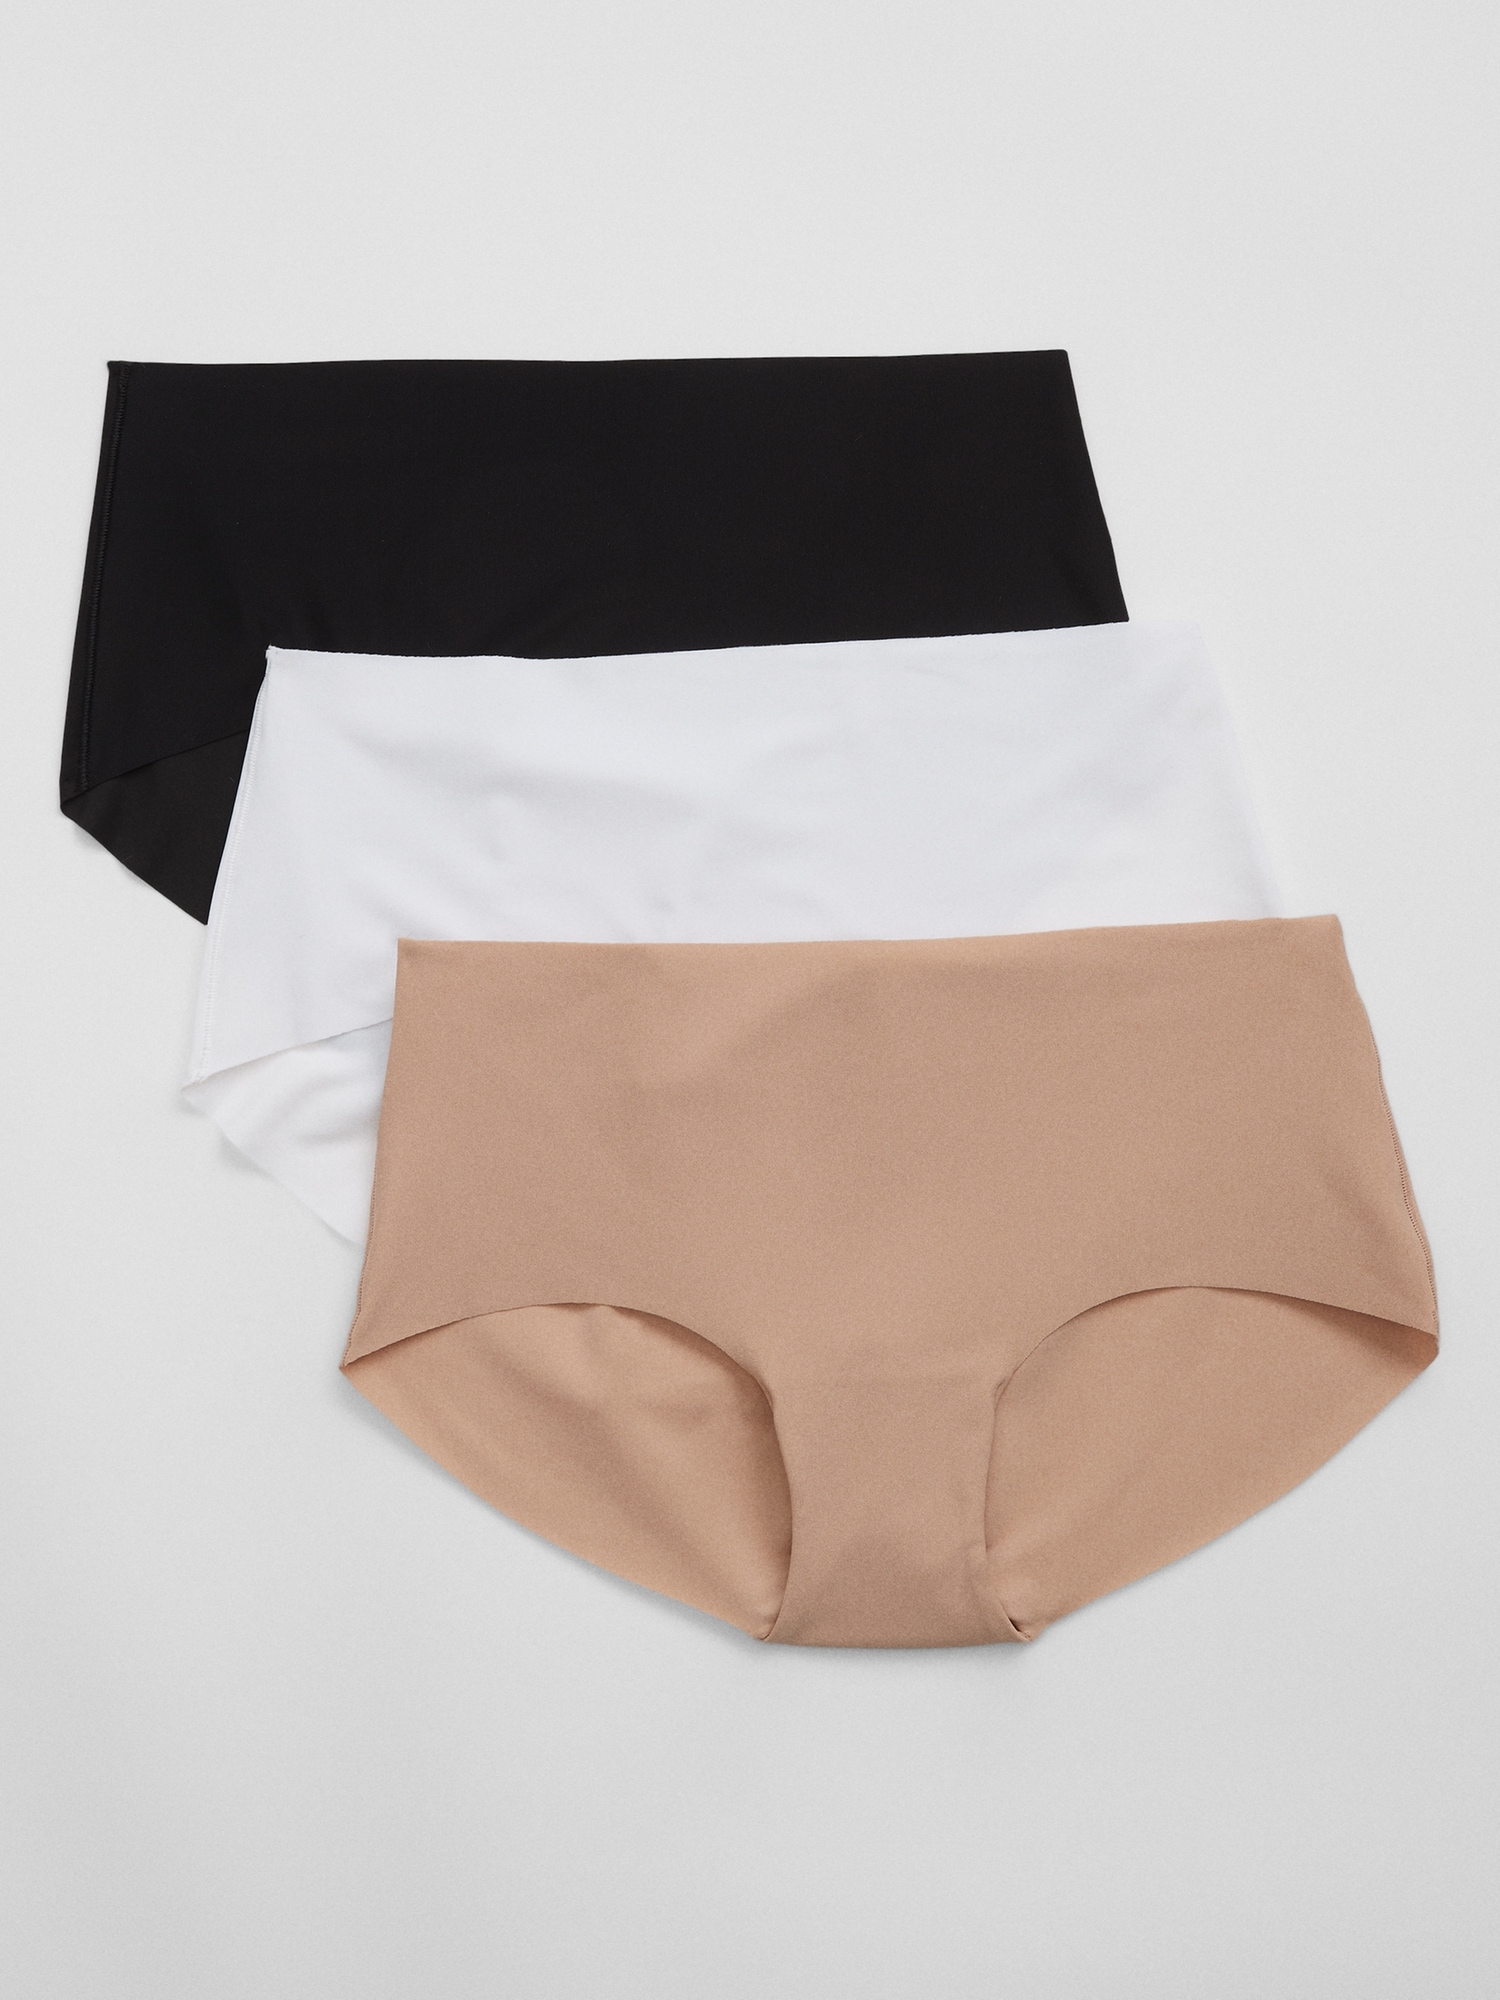  Underwear GAP - outdoorové oblečení a vybavení shop